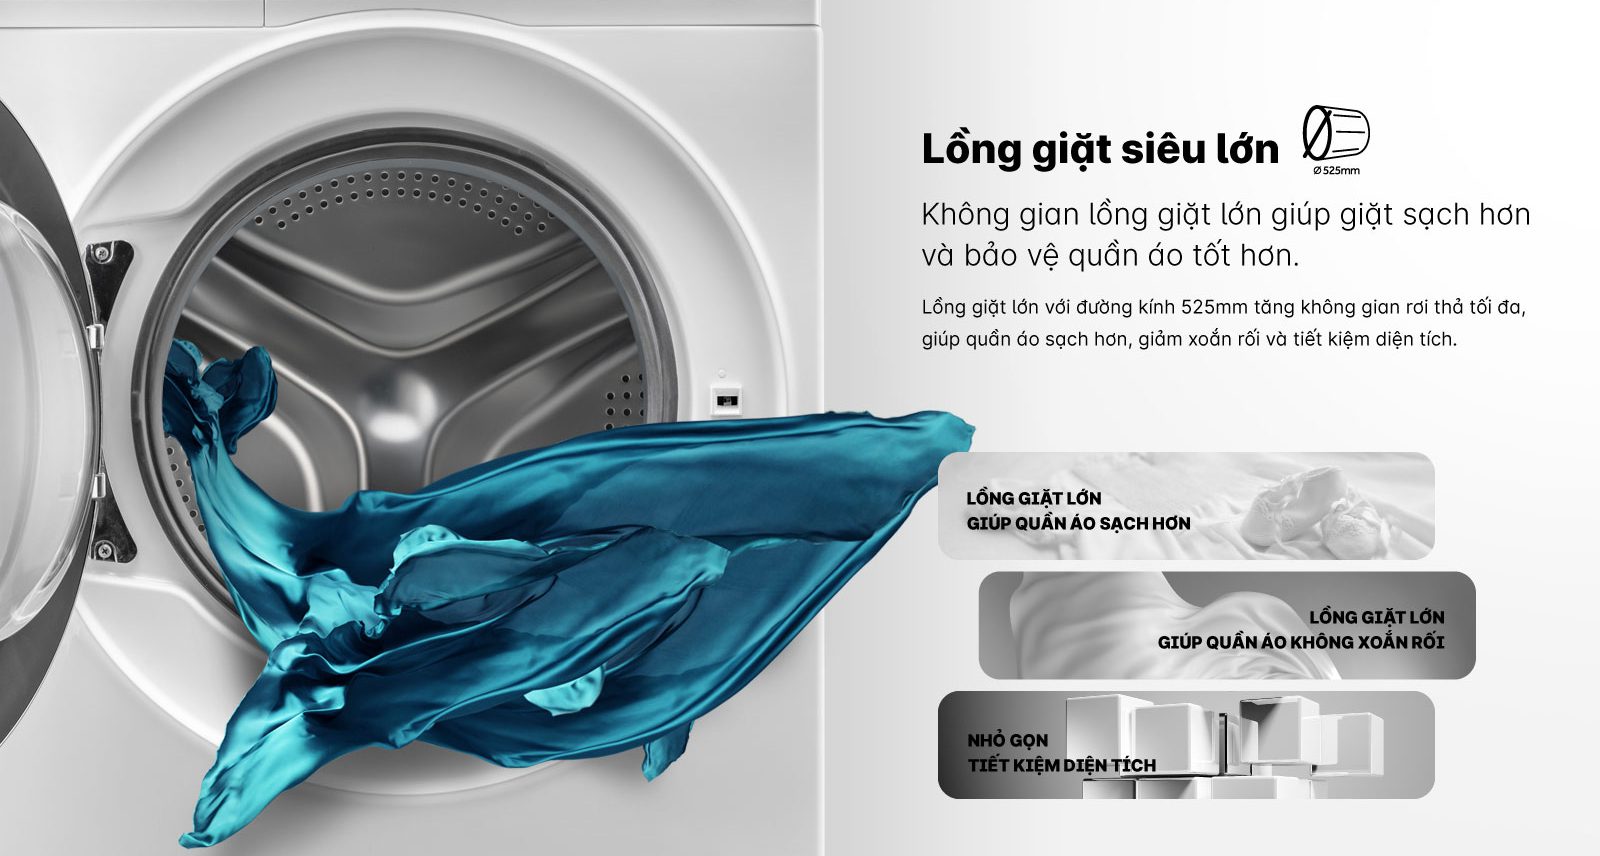 Máy giặt AQUA lồng giặt lớn 525mm có tác dụng gì?